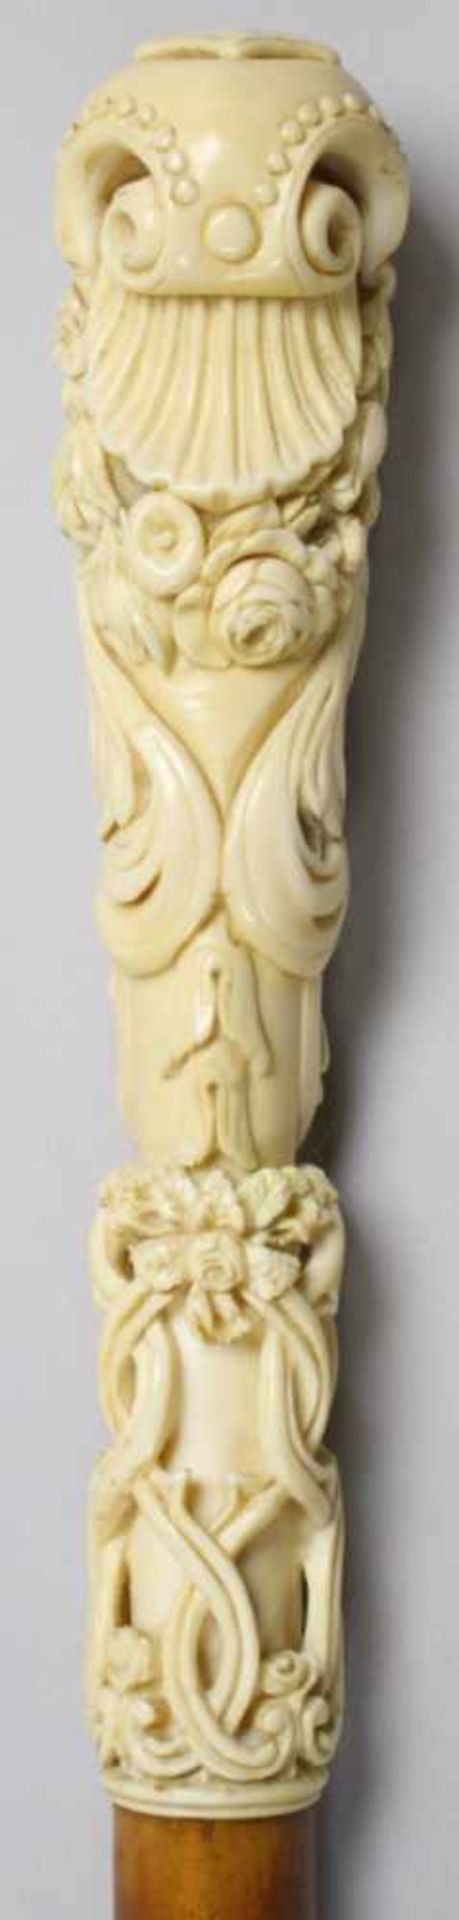 Spazierstock, 19. Jh., Schaft aus braunem Malakkarohr, Griff fein geschnitzt ausElfenbein, in Form - Bild 4 aus 4